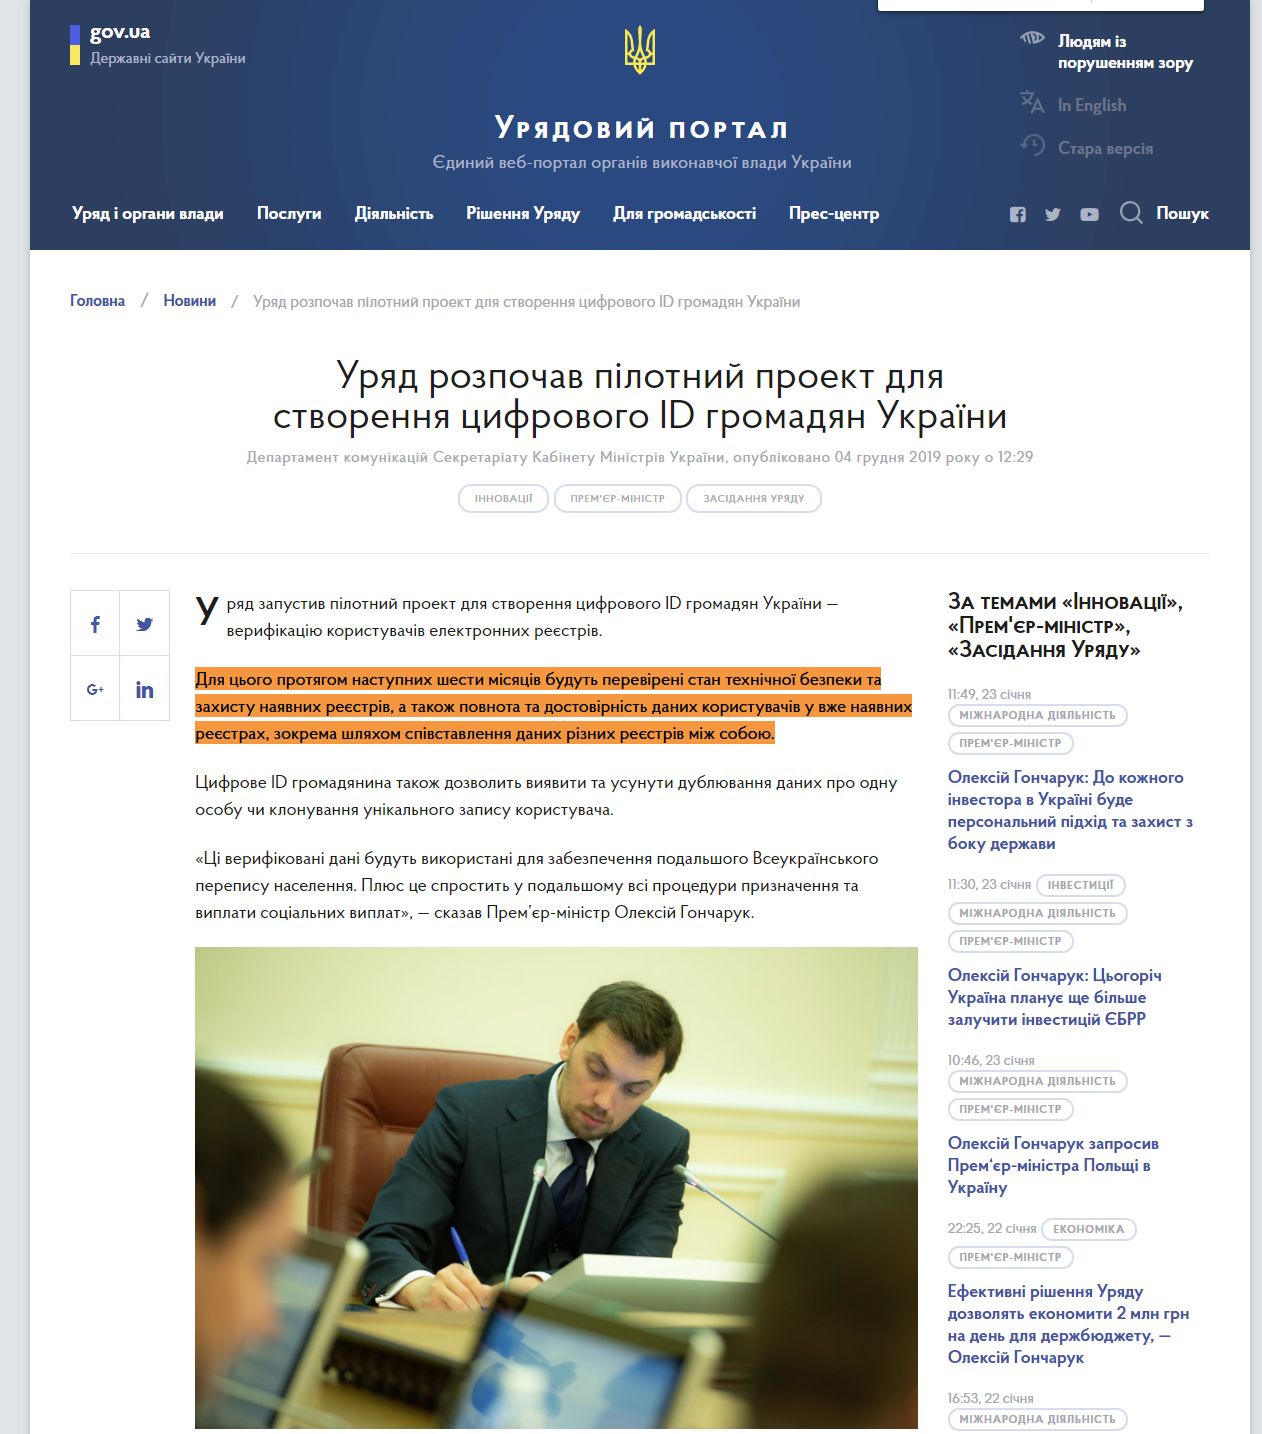 https://www.kmu.gov.ua/news/uryad-rozpochav-pilotnij-proekt-dlya-stvorennya-cifrovogo-id-gromadyan-ukrayini